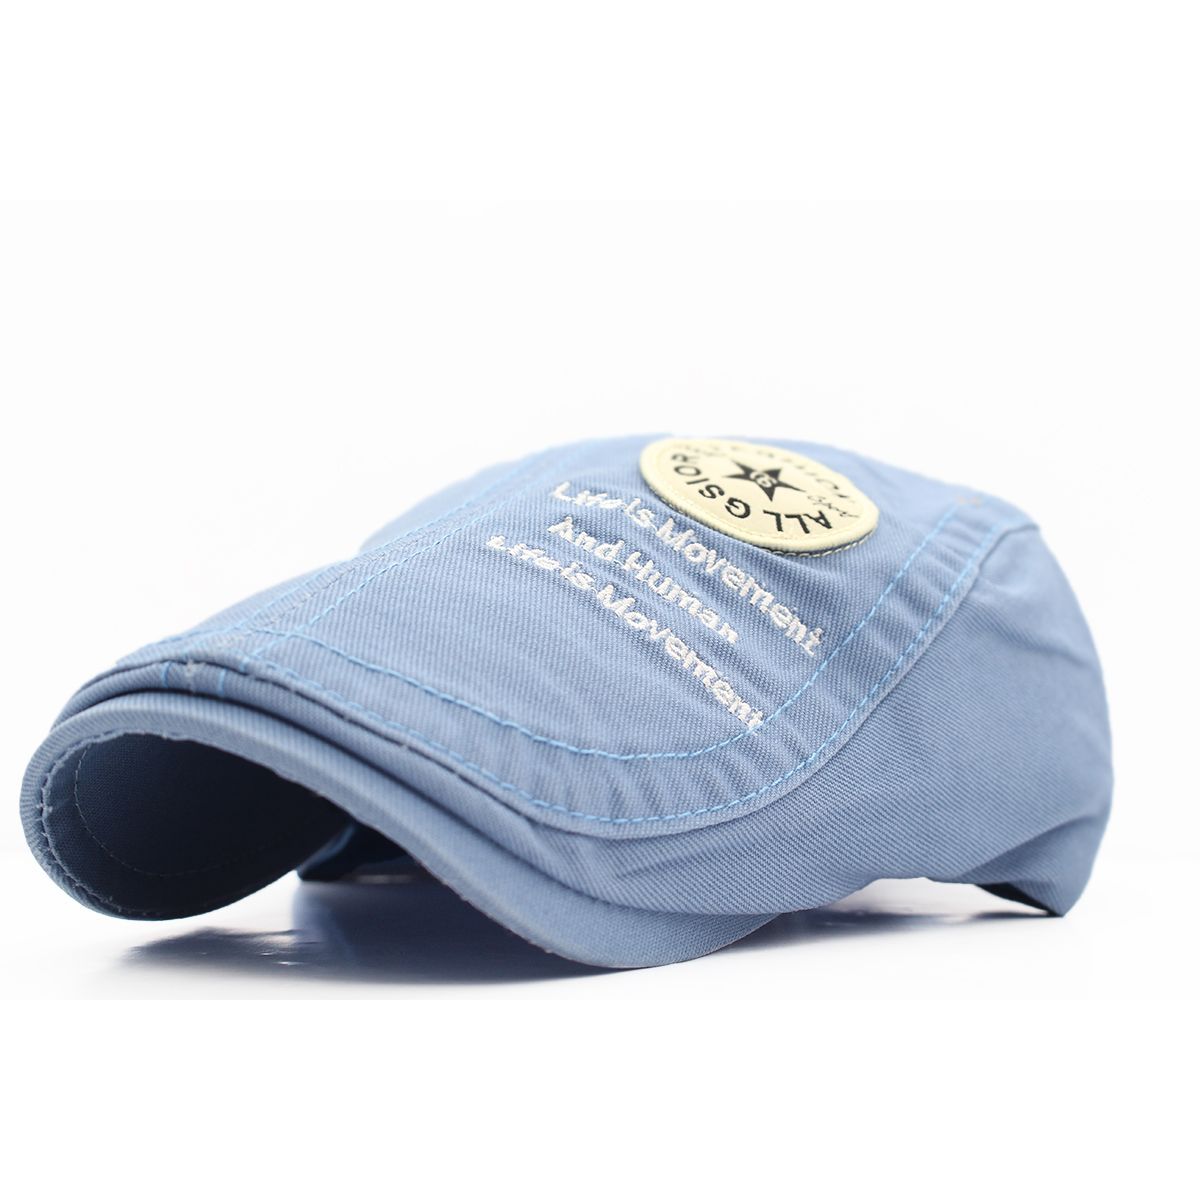 ハンチング帽子 ワッペン英文 綿 キャップ 帽子 56~59cm HC140-3 - メルカリ